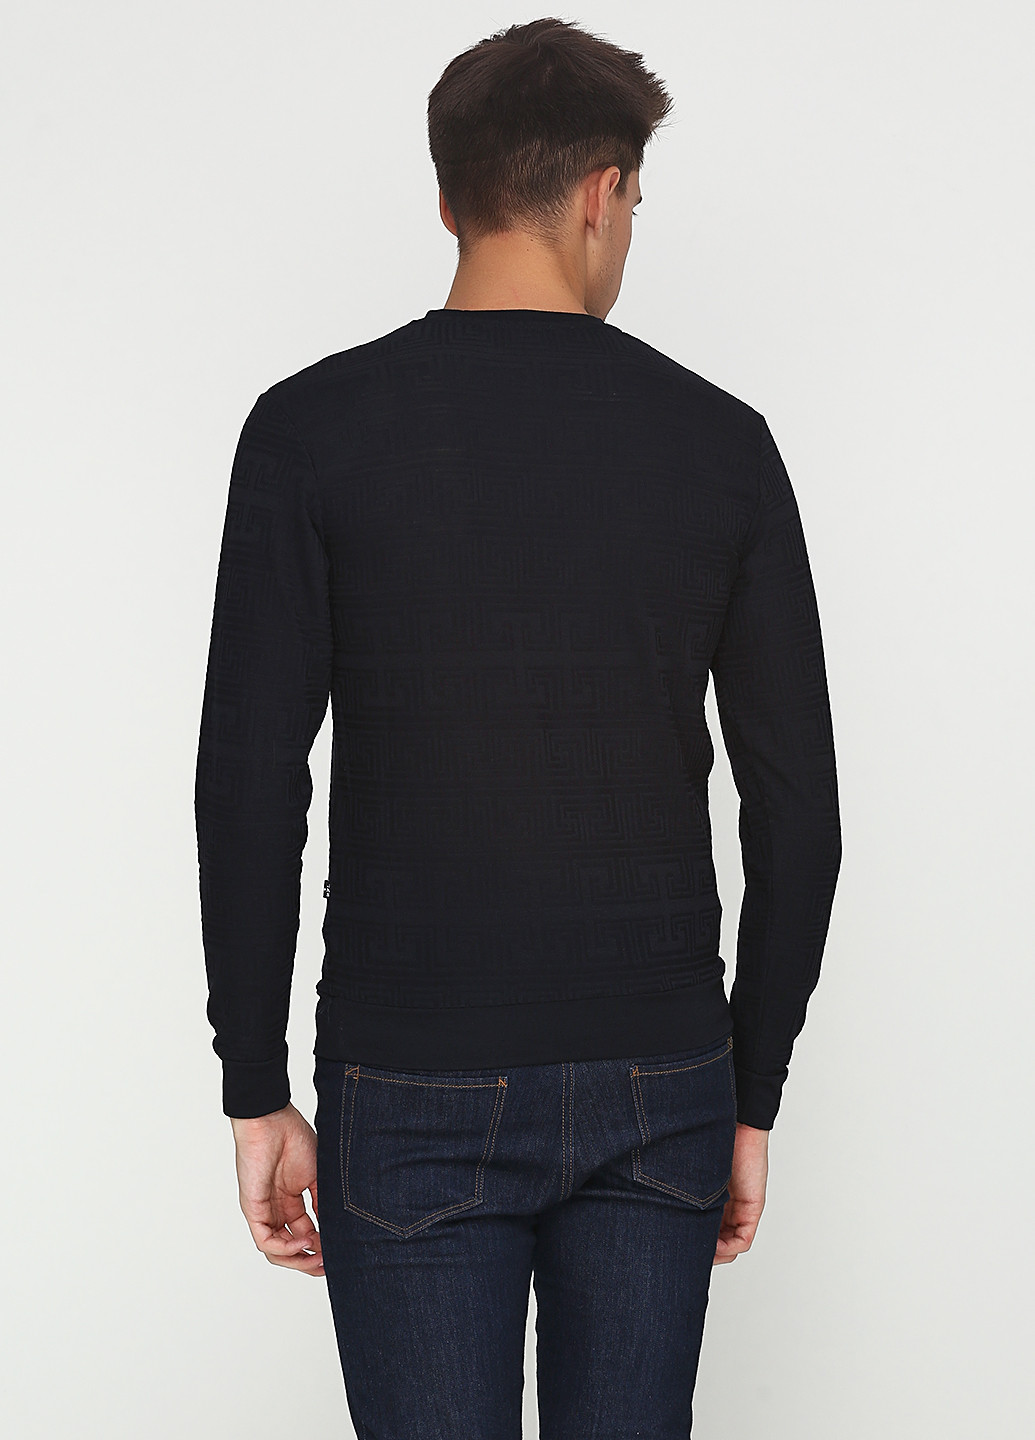 Черный демисезонный пуловер пуловер MSY